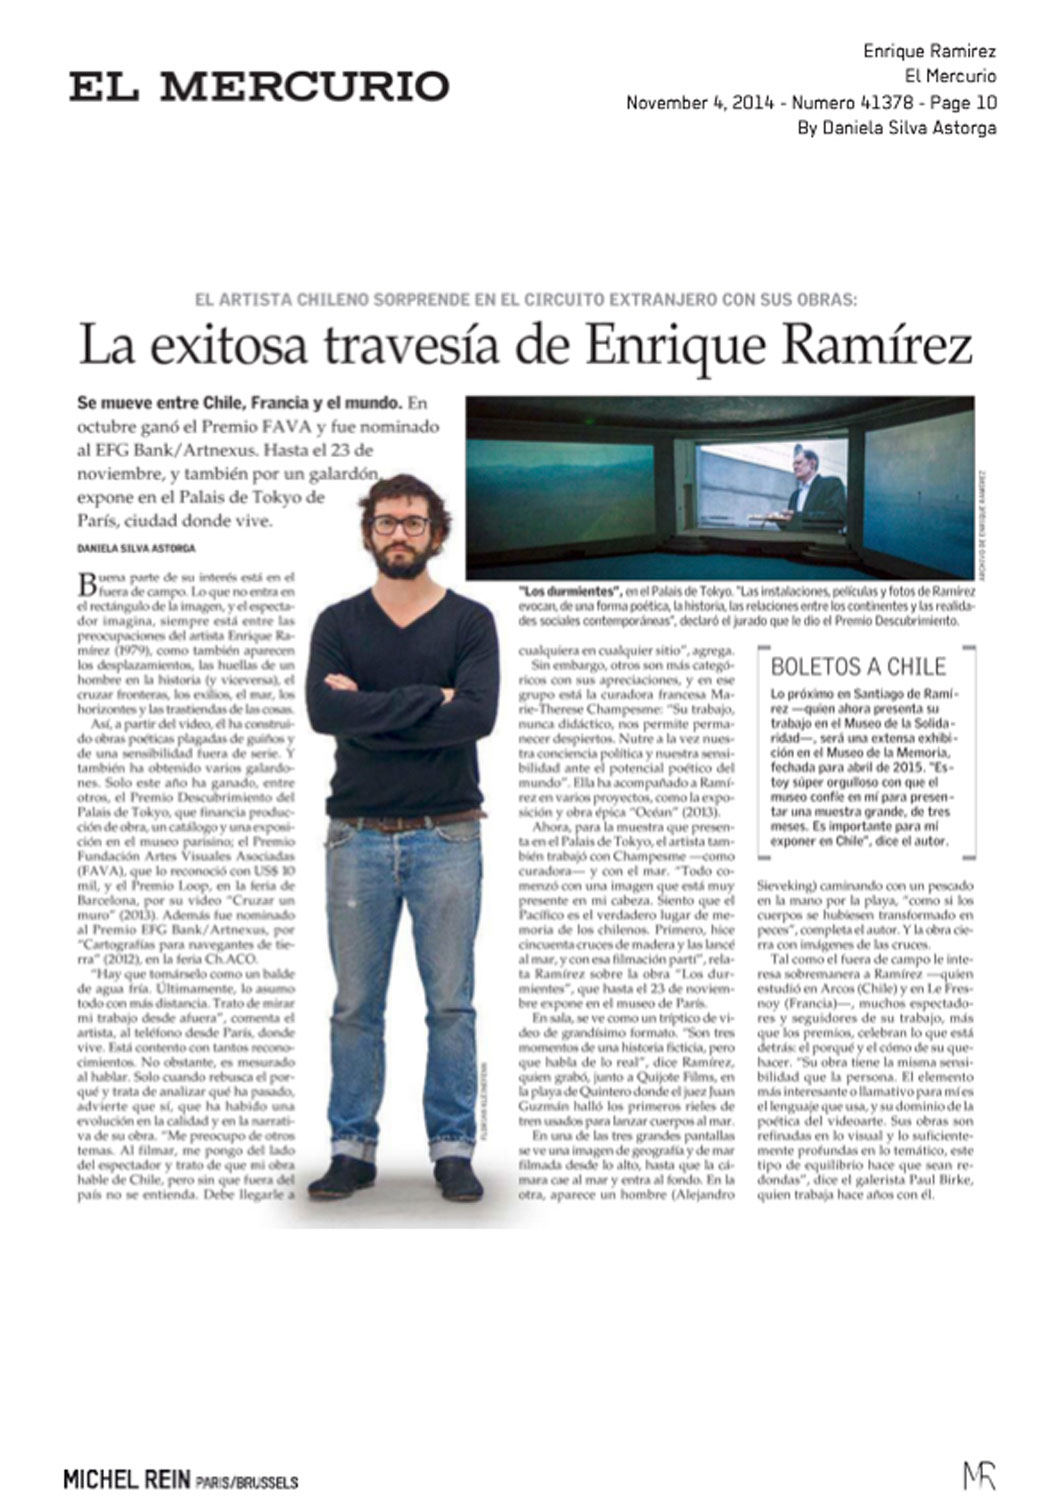 Enrique Ramrez - El Mercurio